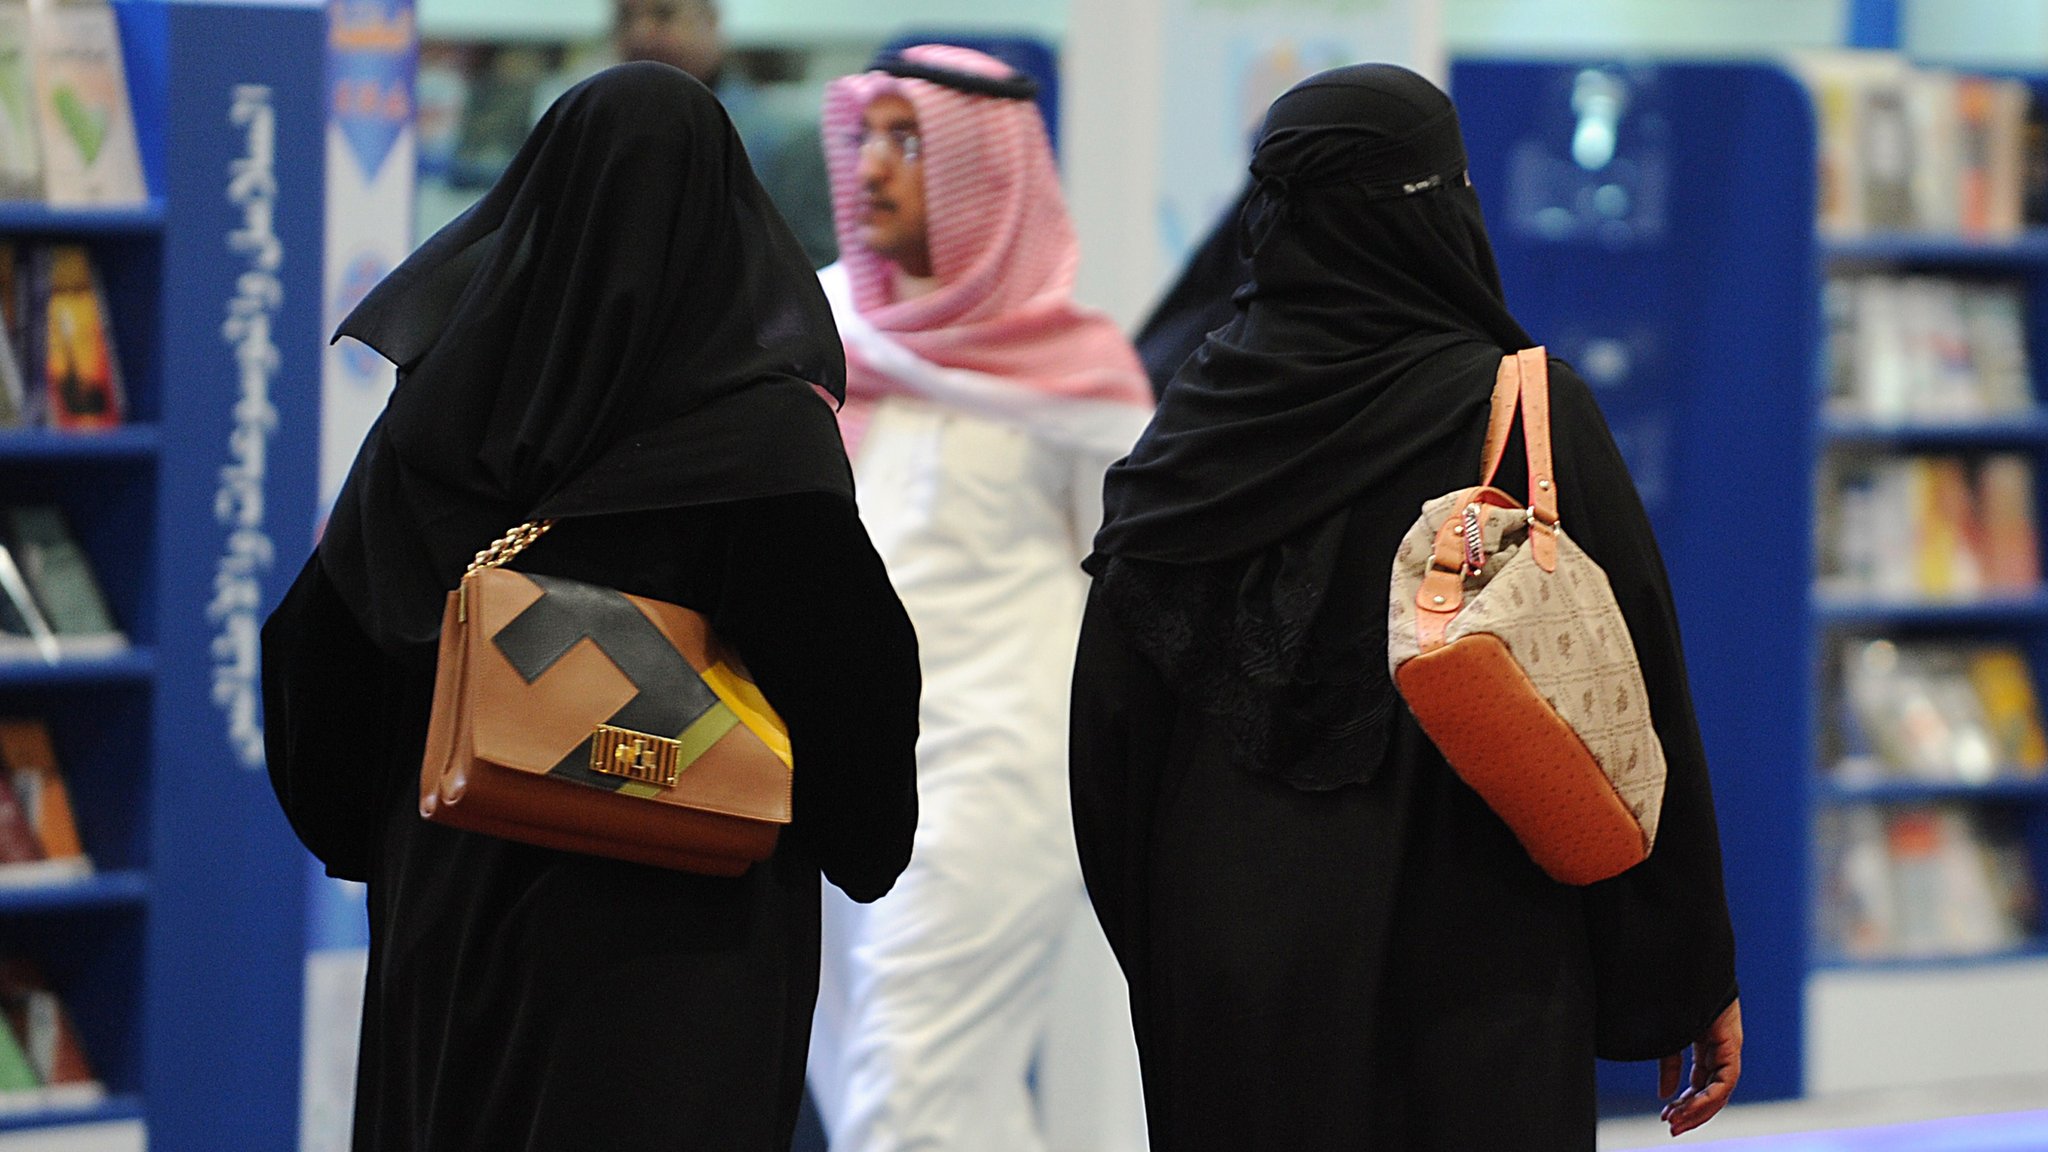 سعودی عرب میں سوشل میڈیا قوانین کی خلاف ورزی پر خاتون یوٹیوبر گرفتار